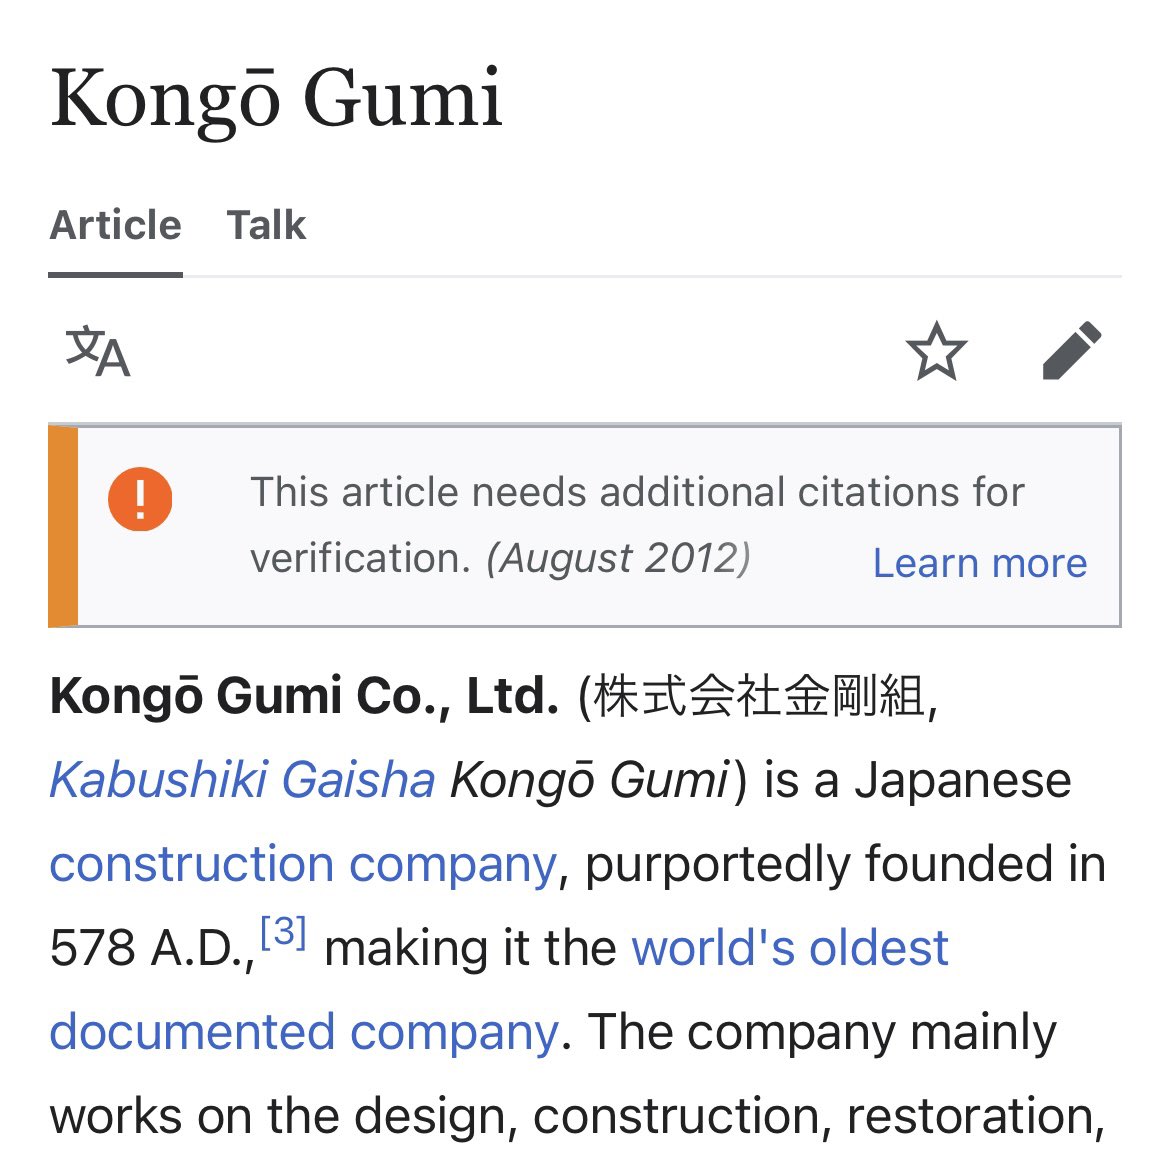 日本人の認知度はそこまで高くないけど、海外では意外と知られている日本企業に「金剛組」があります。私は恥ずかしながらアメリカに来るまで金剛組を知らず、アメリカ人同僚からこのWikipediaの画面を見せられながら'Do you know Kongō